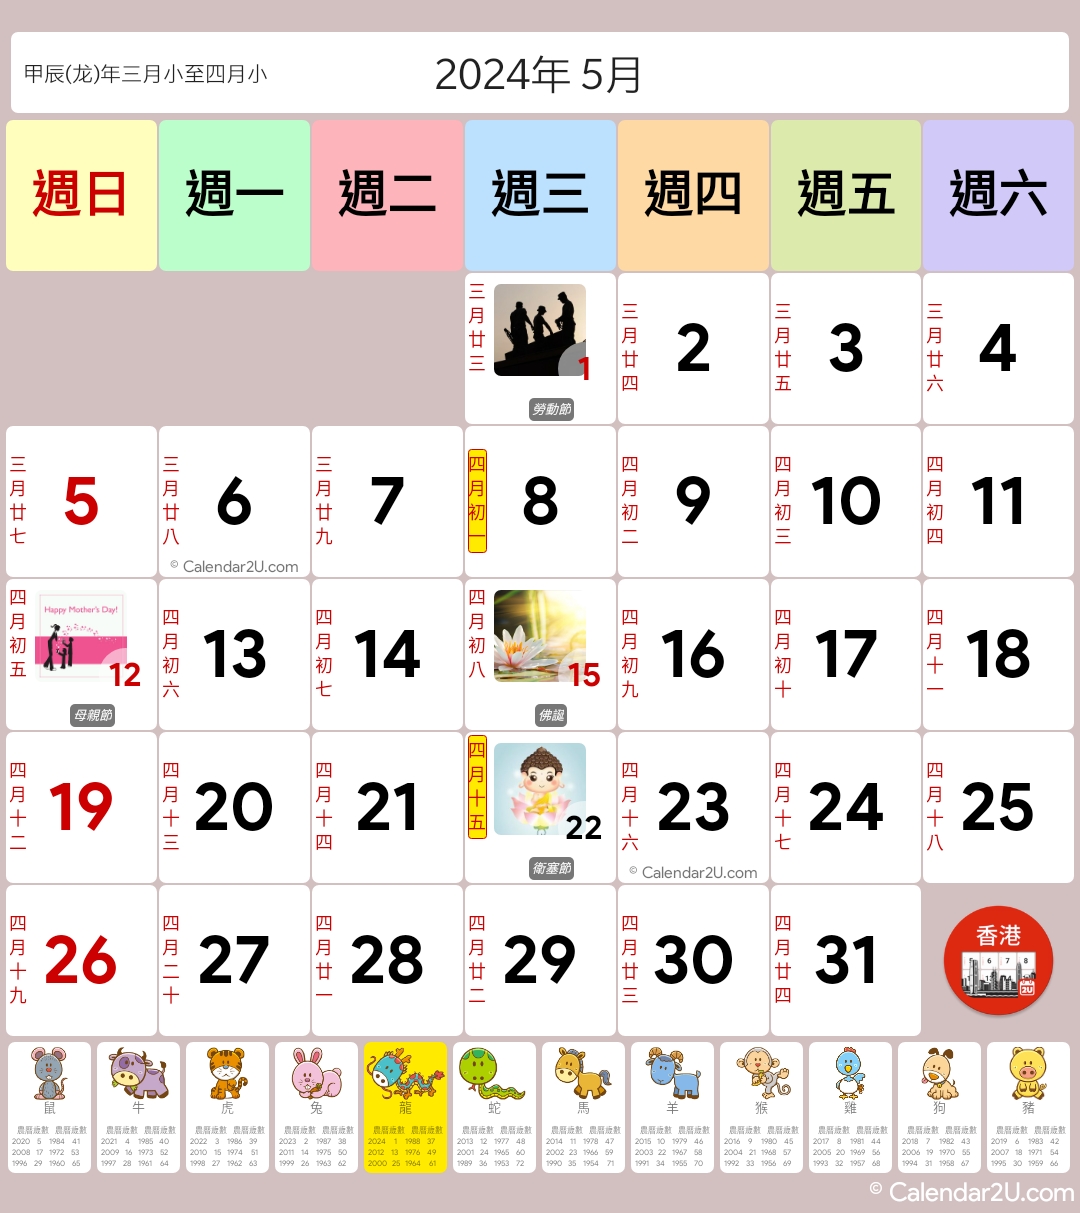 香港 (Hong Kong) Calendar